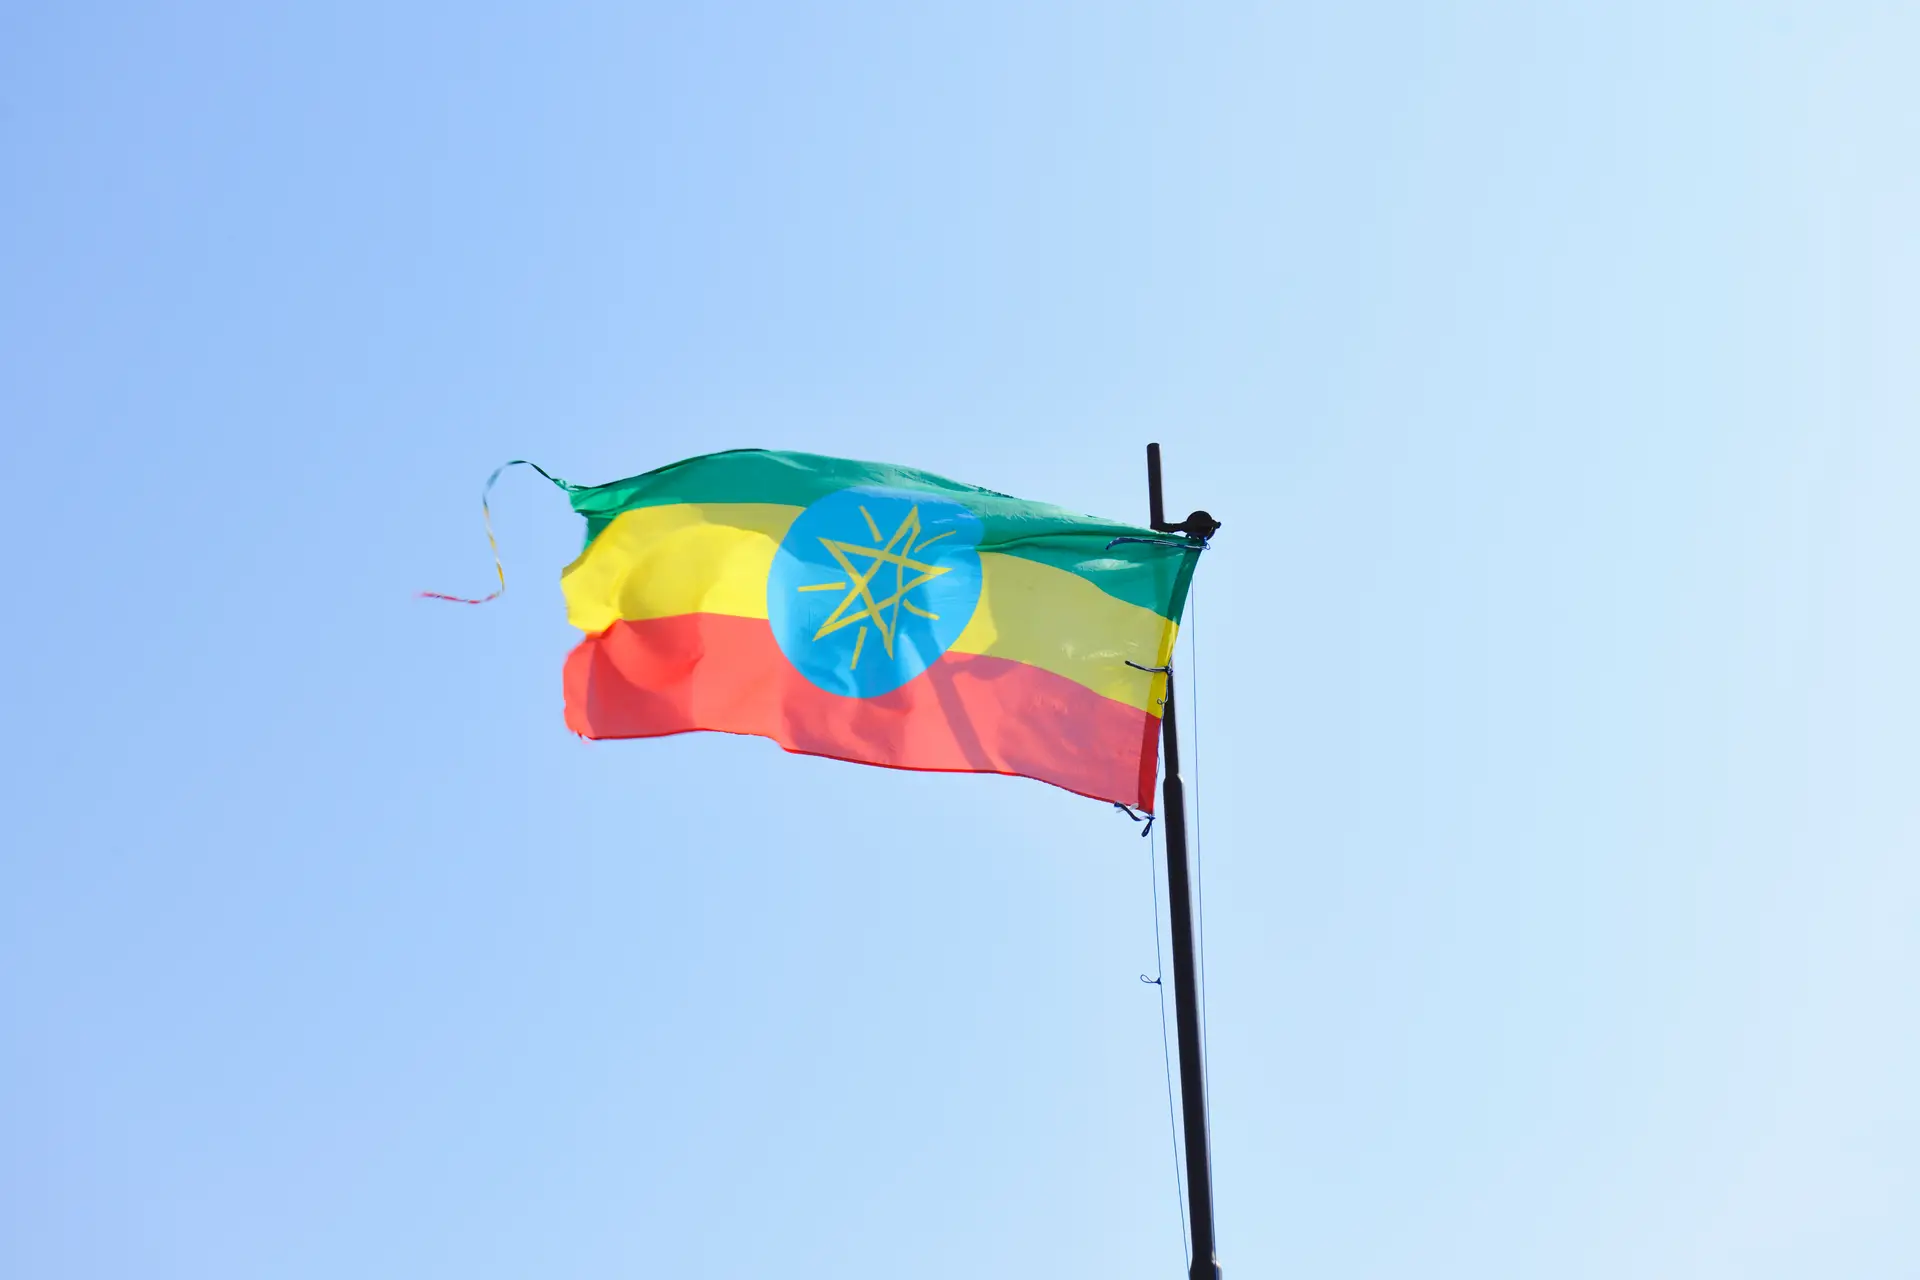 Dois jovens mortos e quatro feridos graves em ataque a igreja ortodoxa na Etiópia